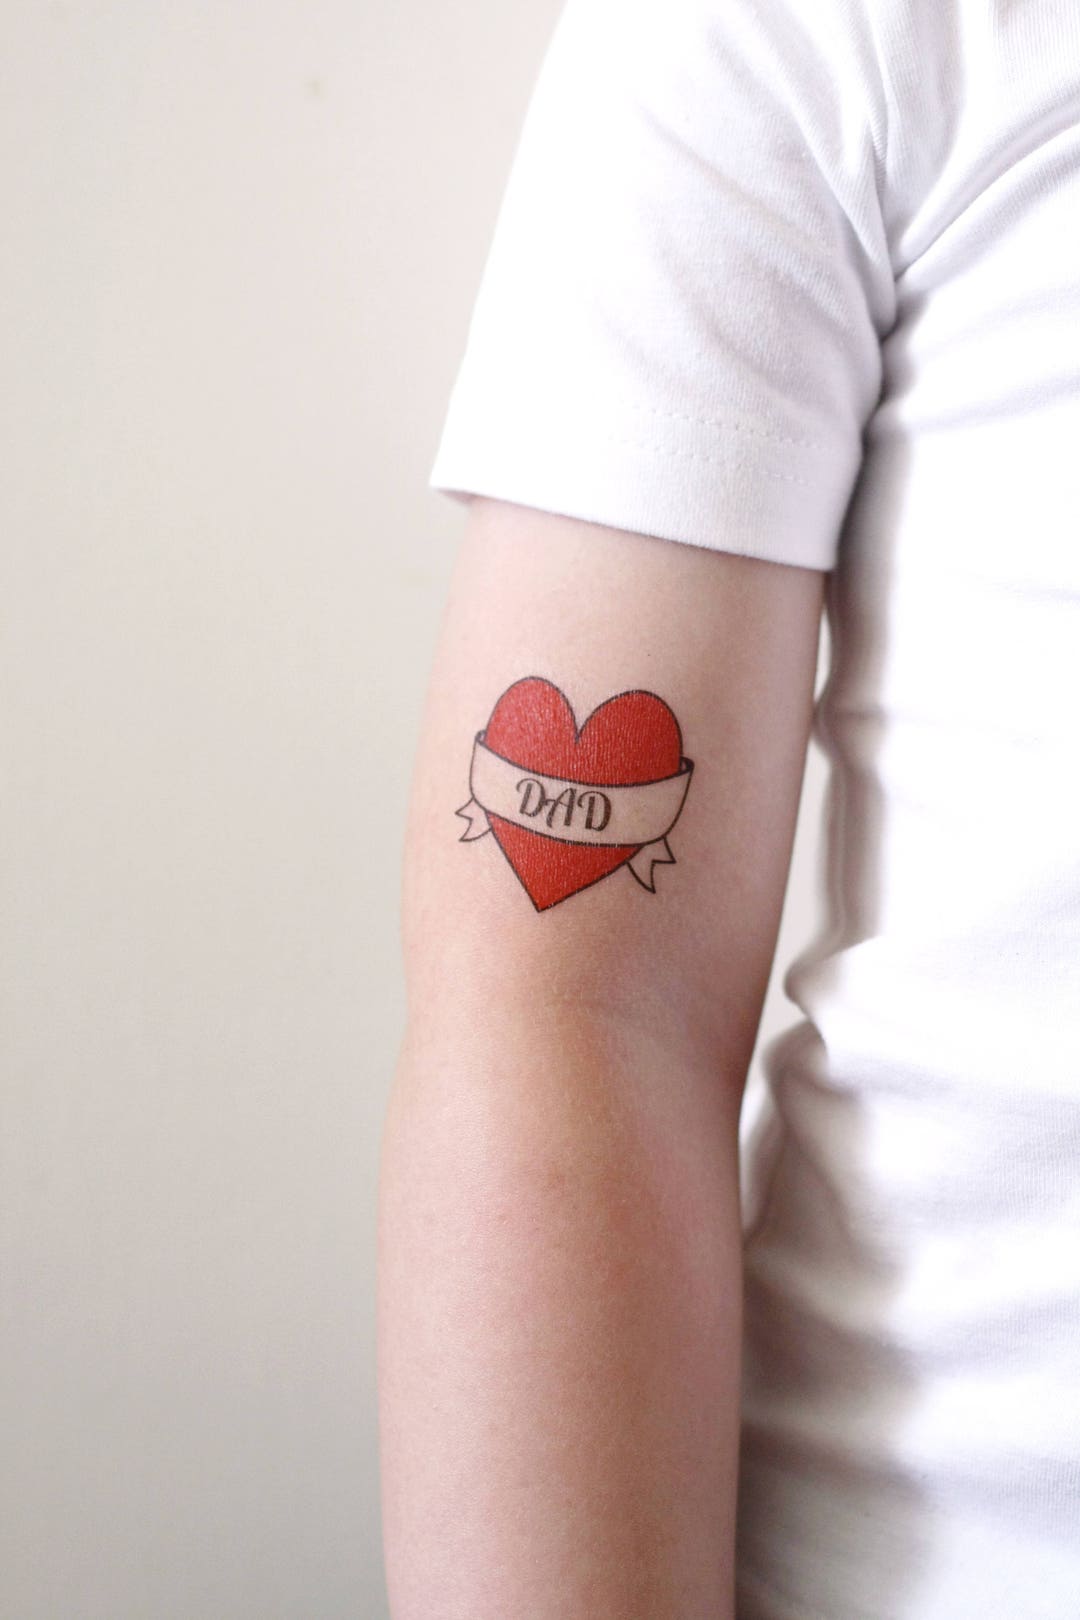 Me encanta papá tatuaje temporal / papá tatuaje / tatuaje del - Etsy México